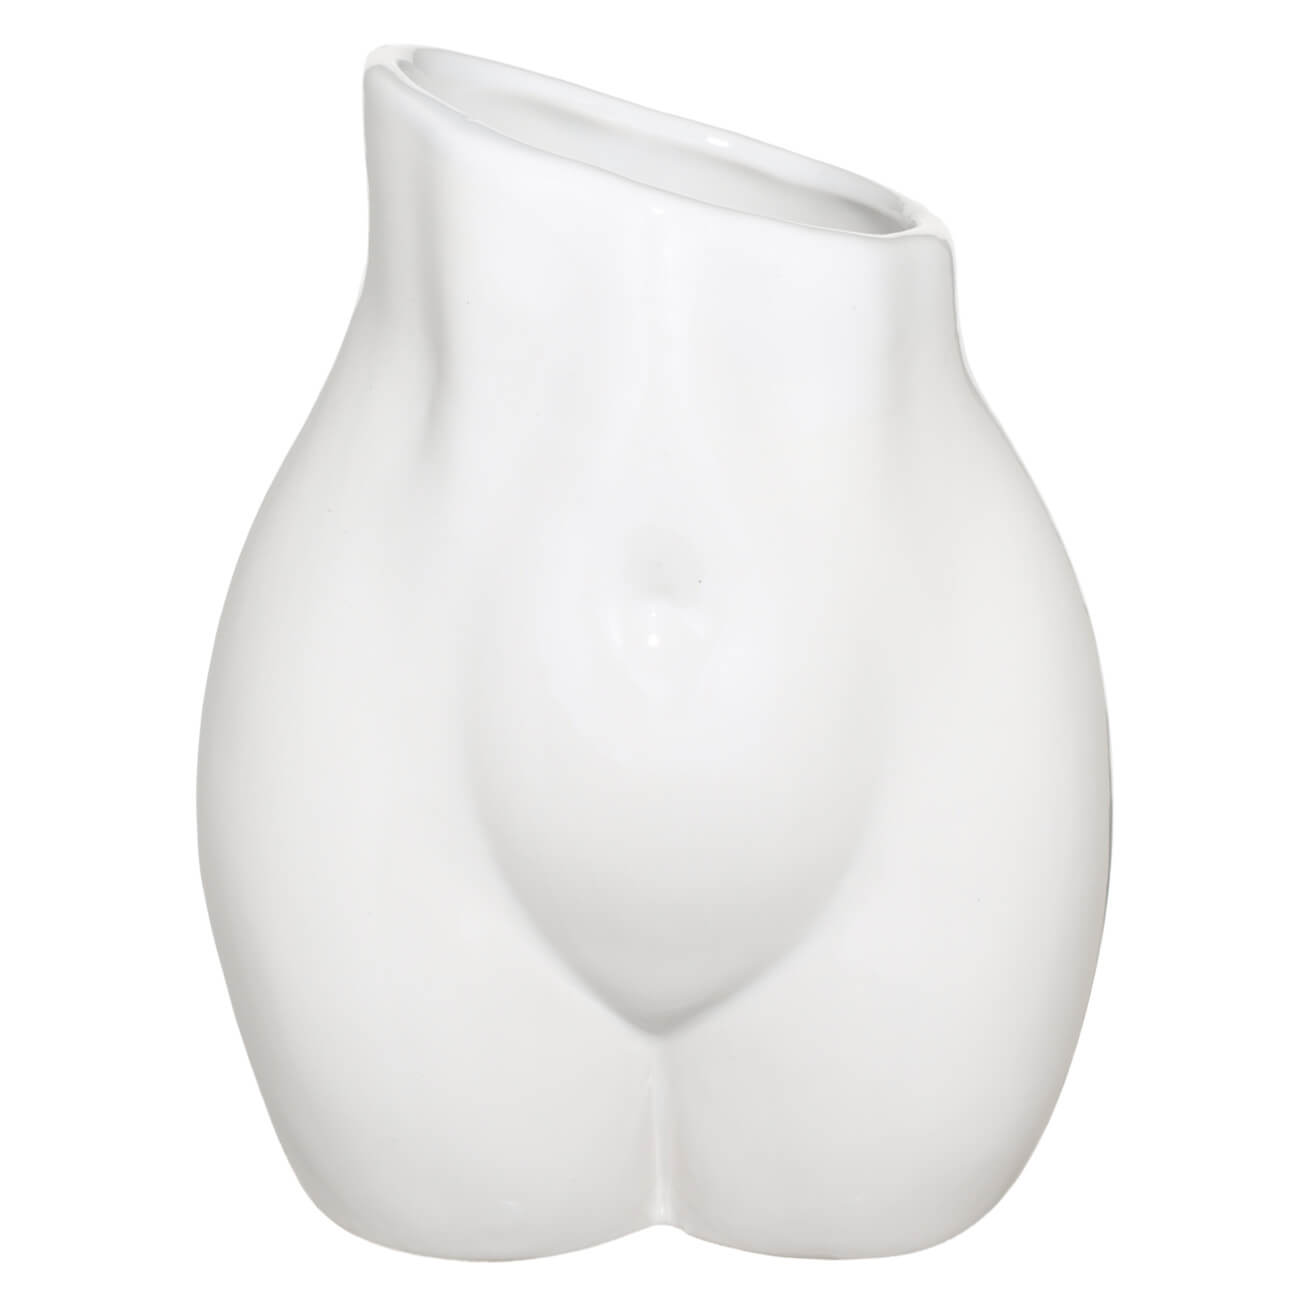 Ваза для цветов, 17 см, декоративная, керамика, белая, Силуэт, Torso ваза для ов 21 см декоративная керамика белая силуэт женщины torso